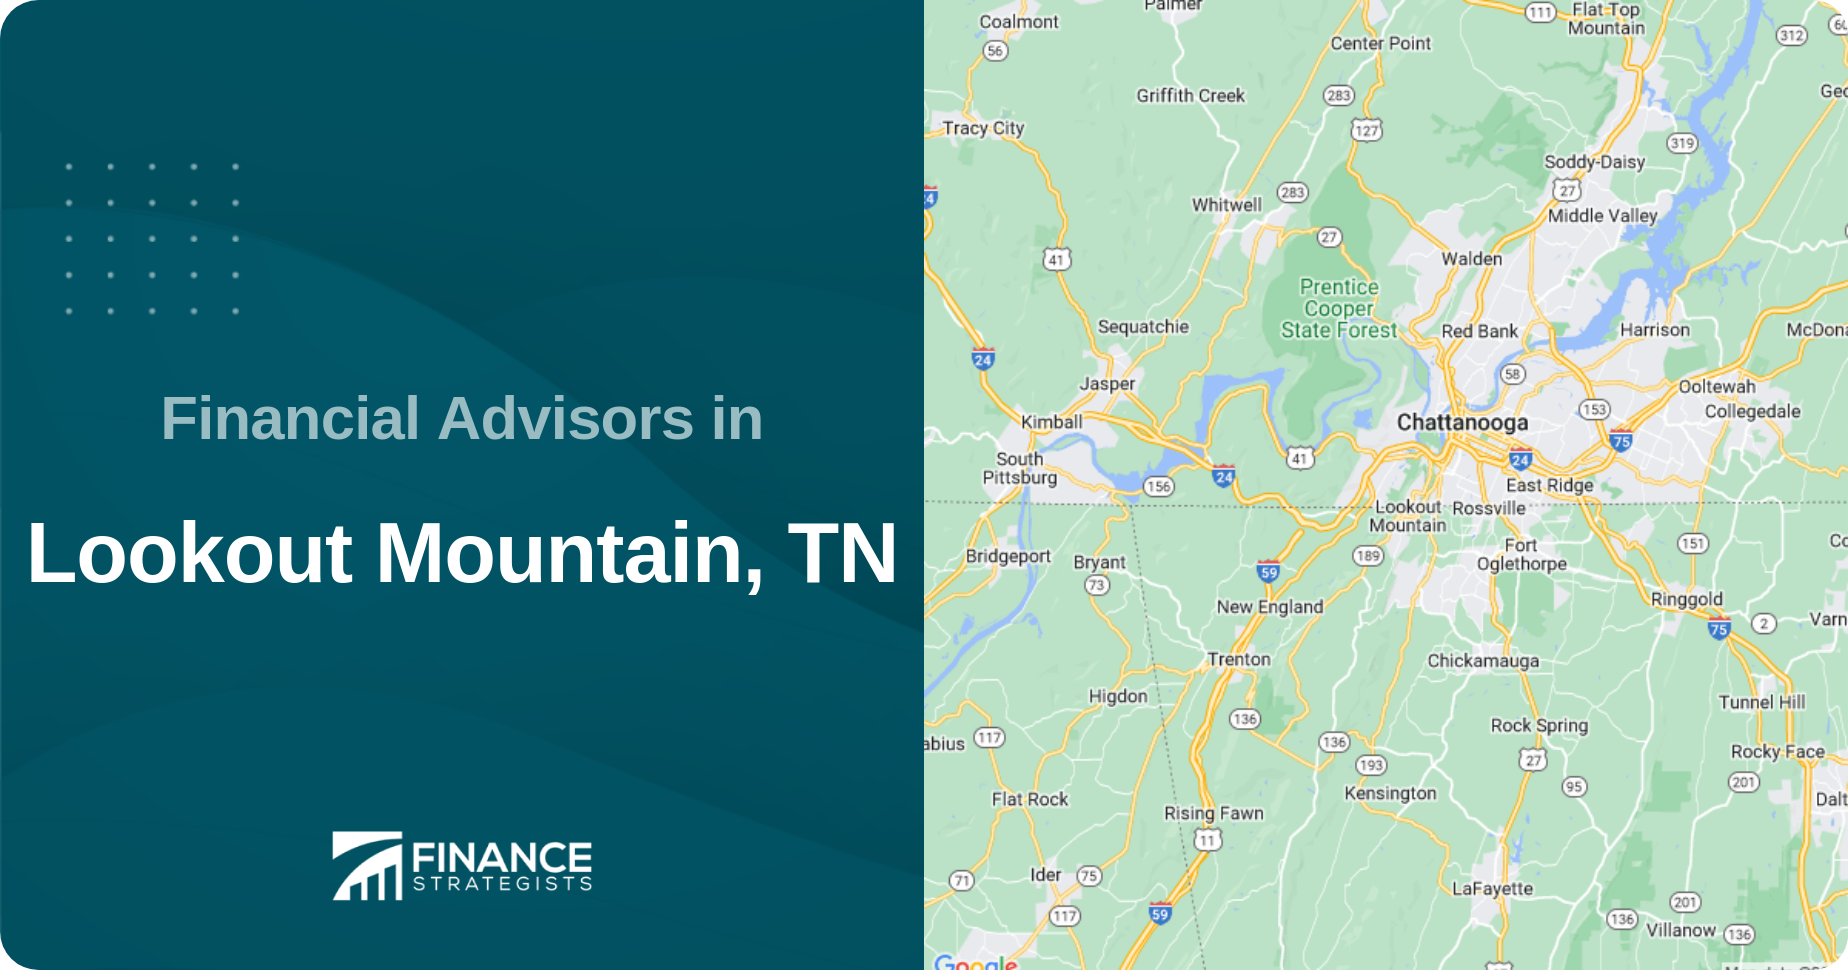 Financial Advisors in Lookout Mountain, TN